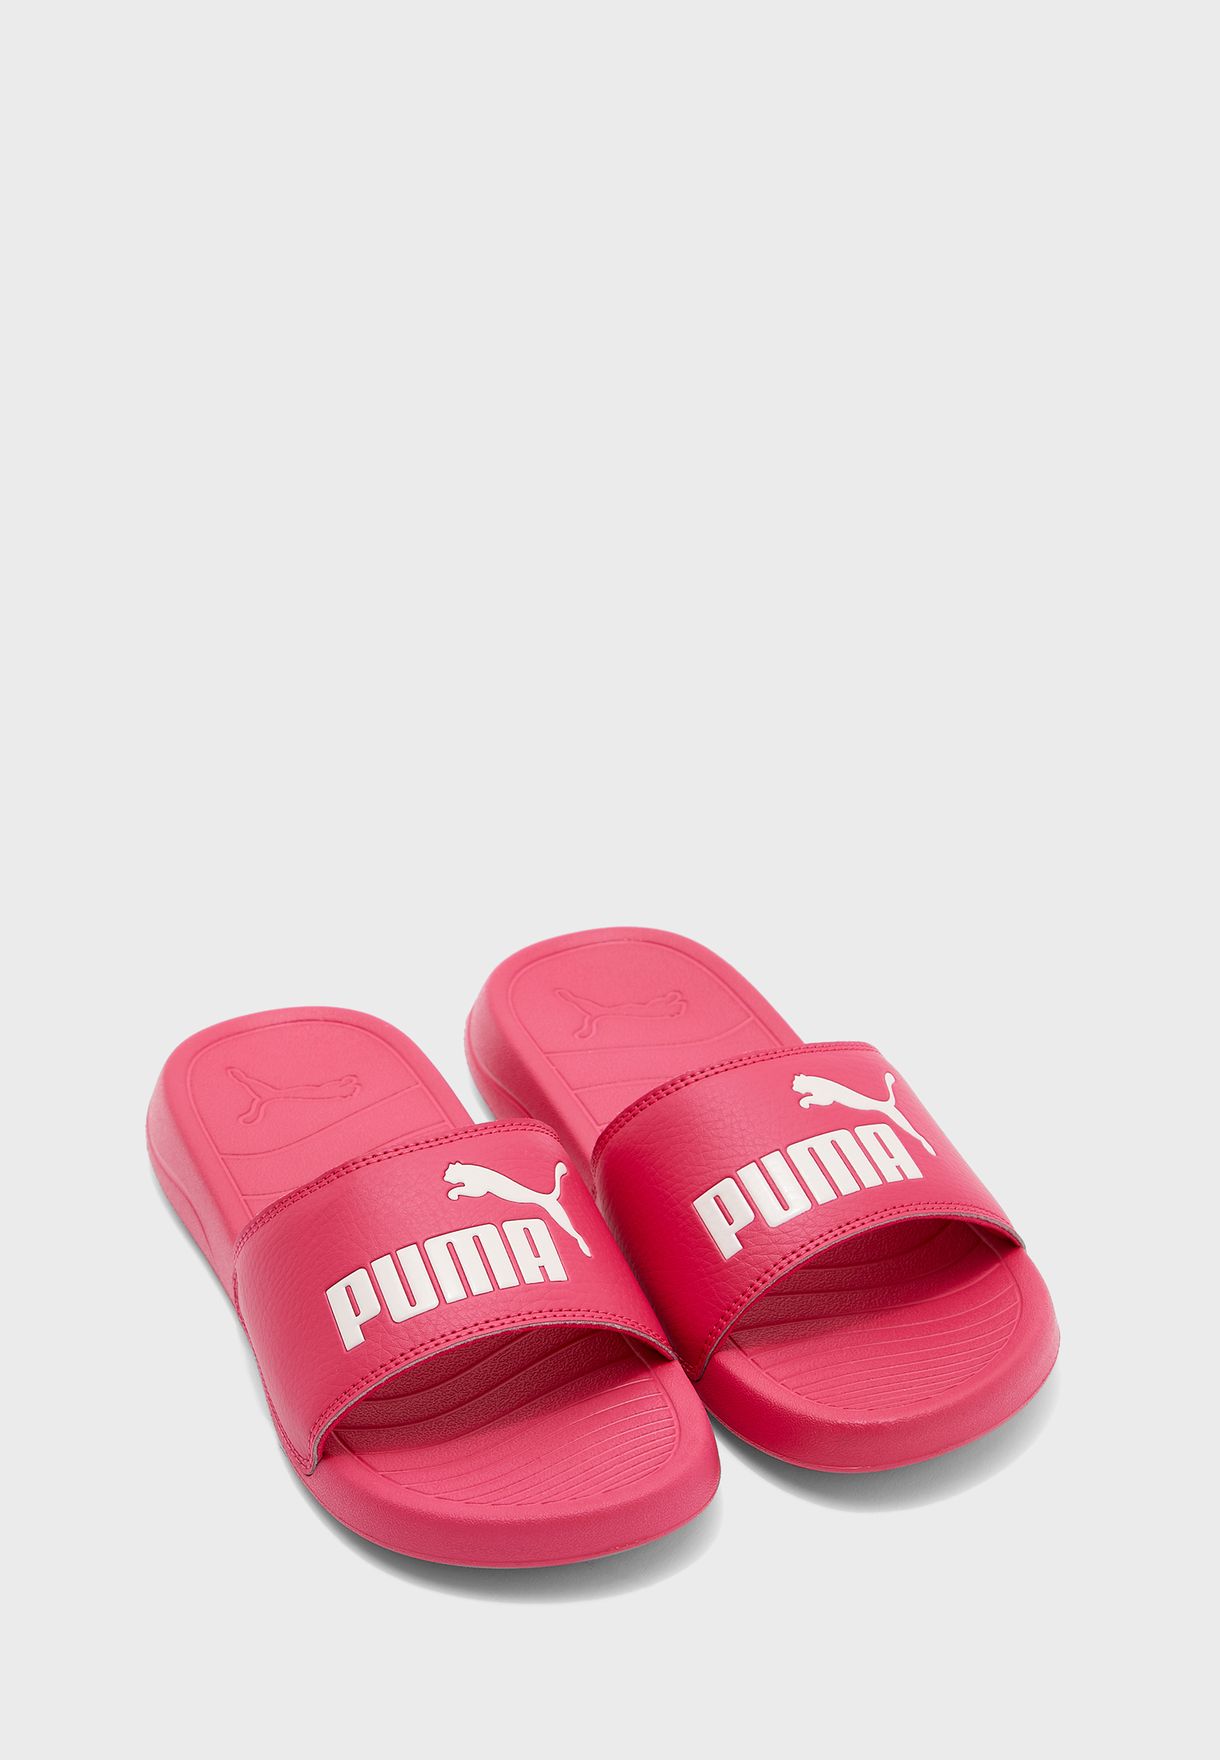 pink pumas slides